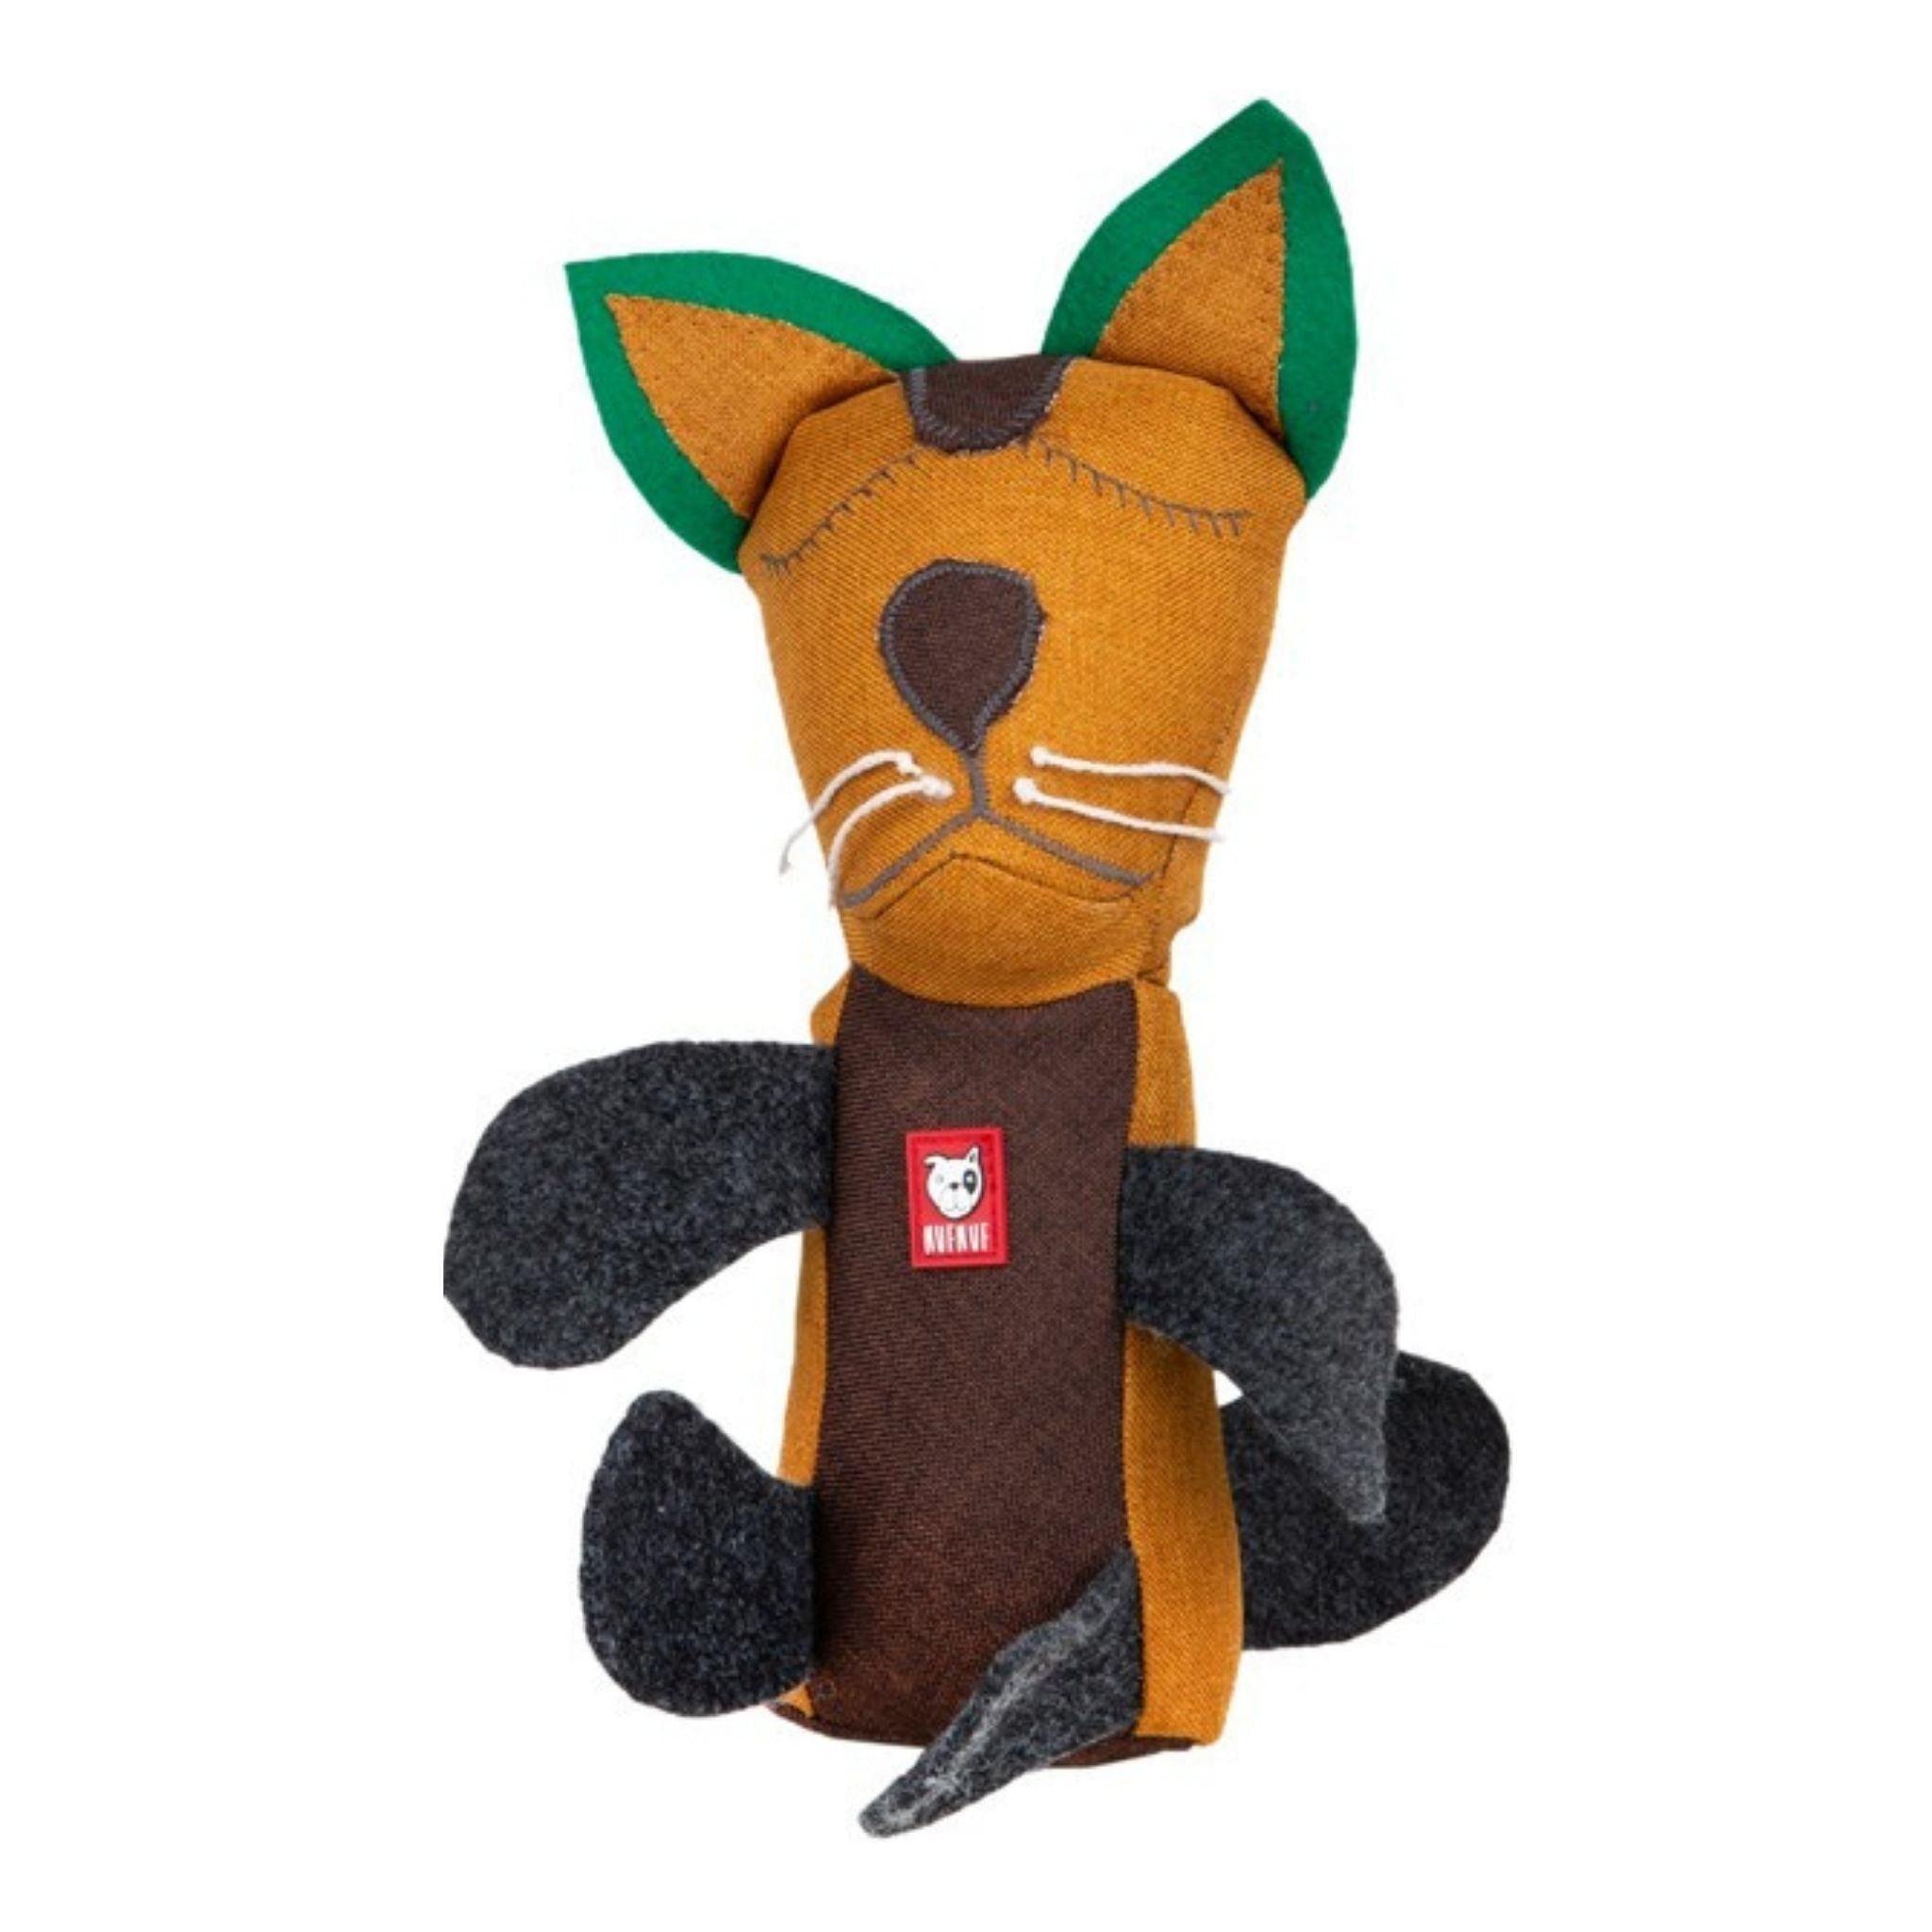 Artikel mit dem Namen NufNuf Upcycle Spielzeug Morris im Shop von zoo.de , dem Onlineshop für nachhaltiges Hundefutter und Katzenfutter.